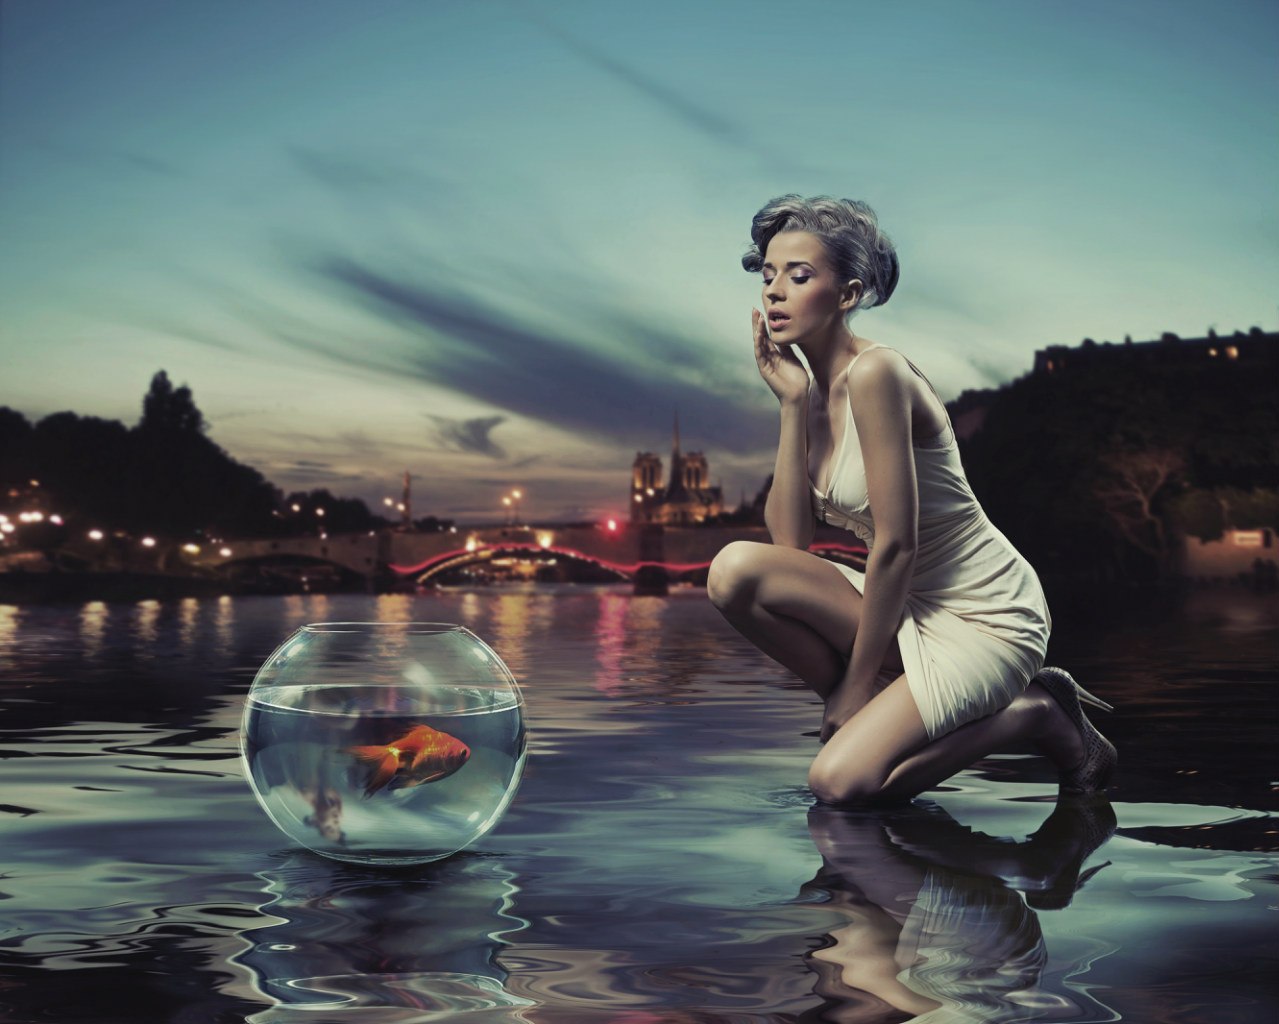 Фото Девушка в воде на фоне ночного города, рядом с ней стоит аквариум с золотой рыбкой